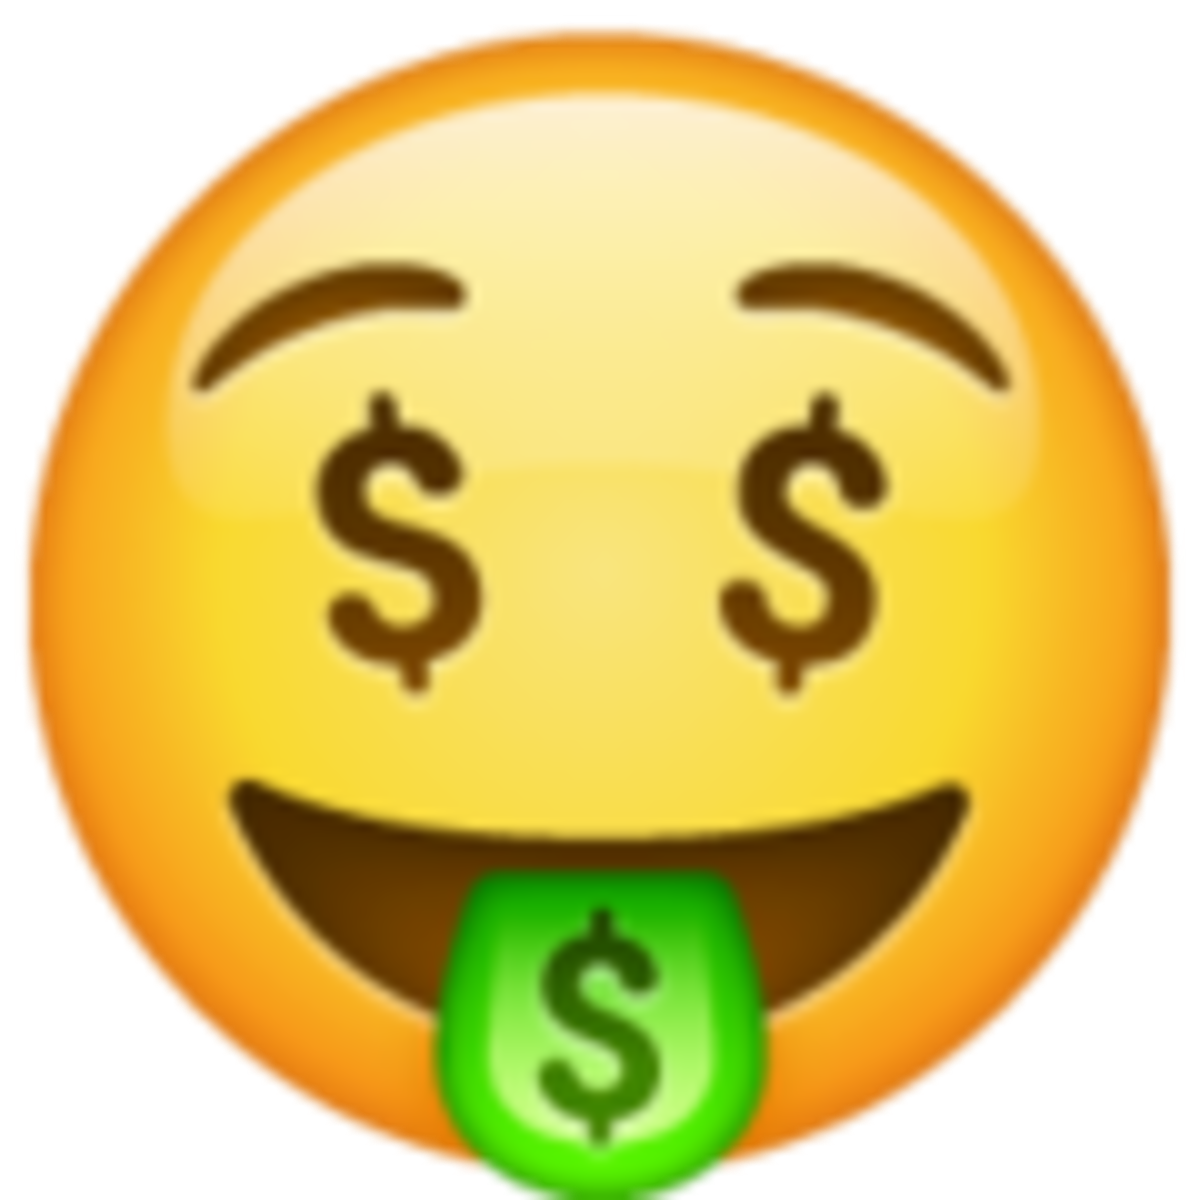 Emoji 1f911. cara con lengua fuera y dolar en los ojos